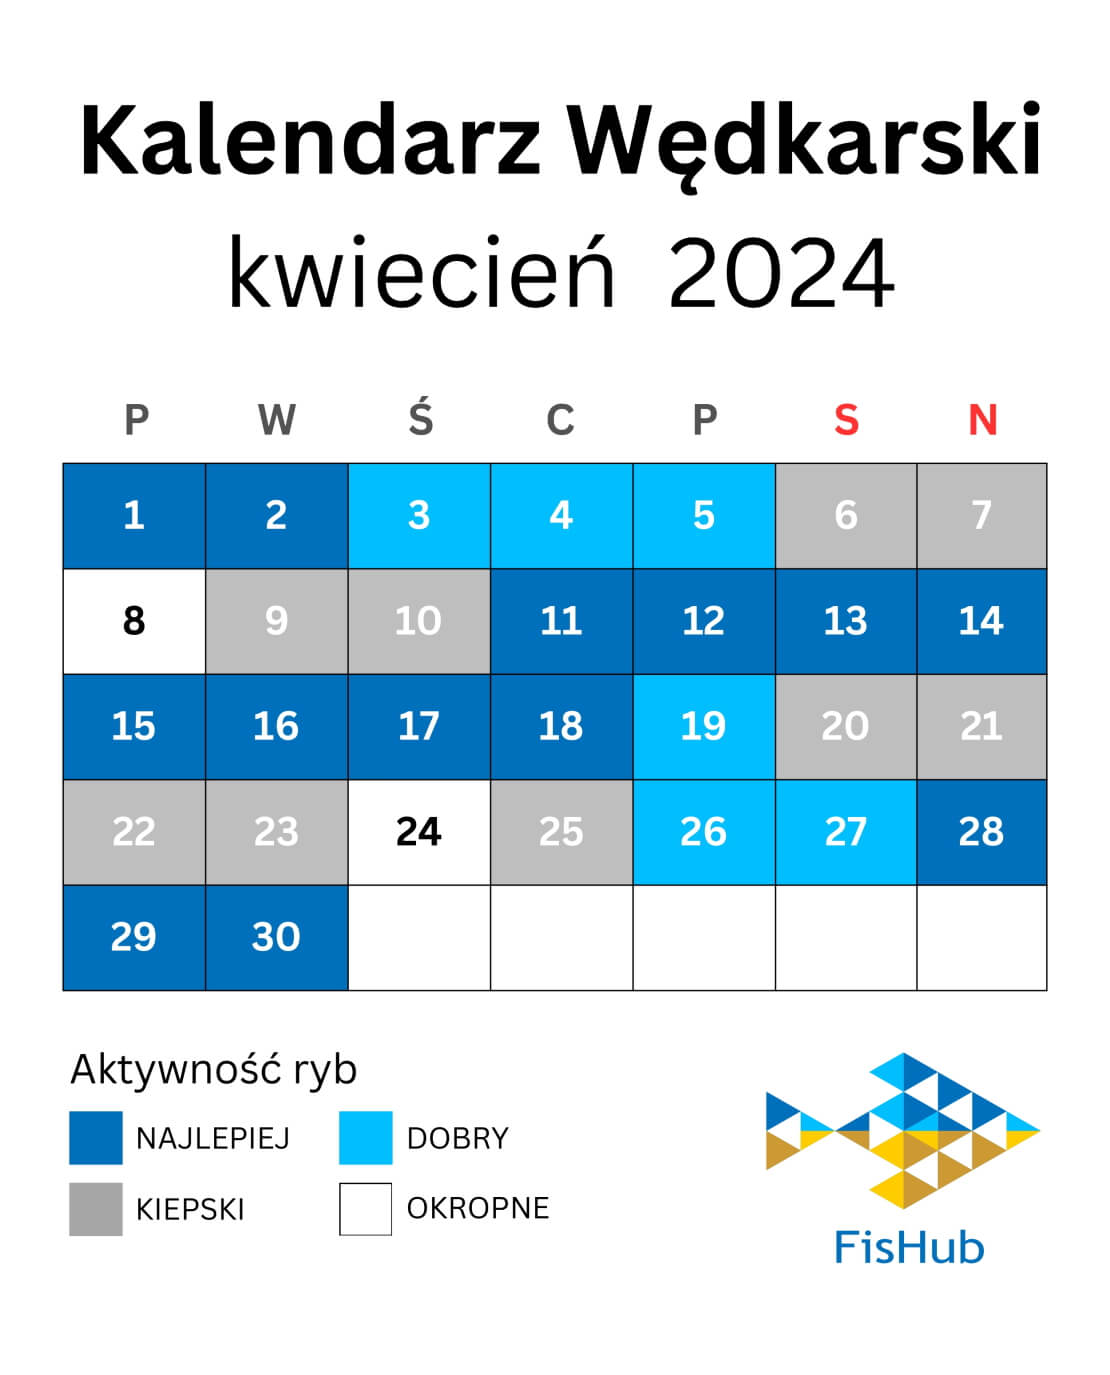 Kalendarz rybacki na kwiecień 2024